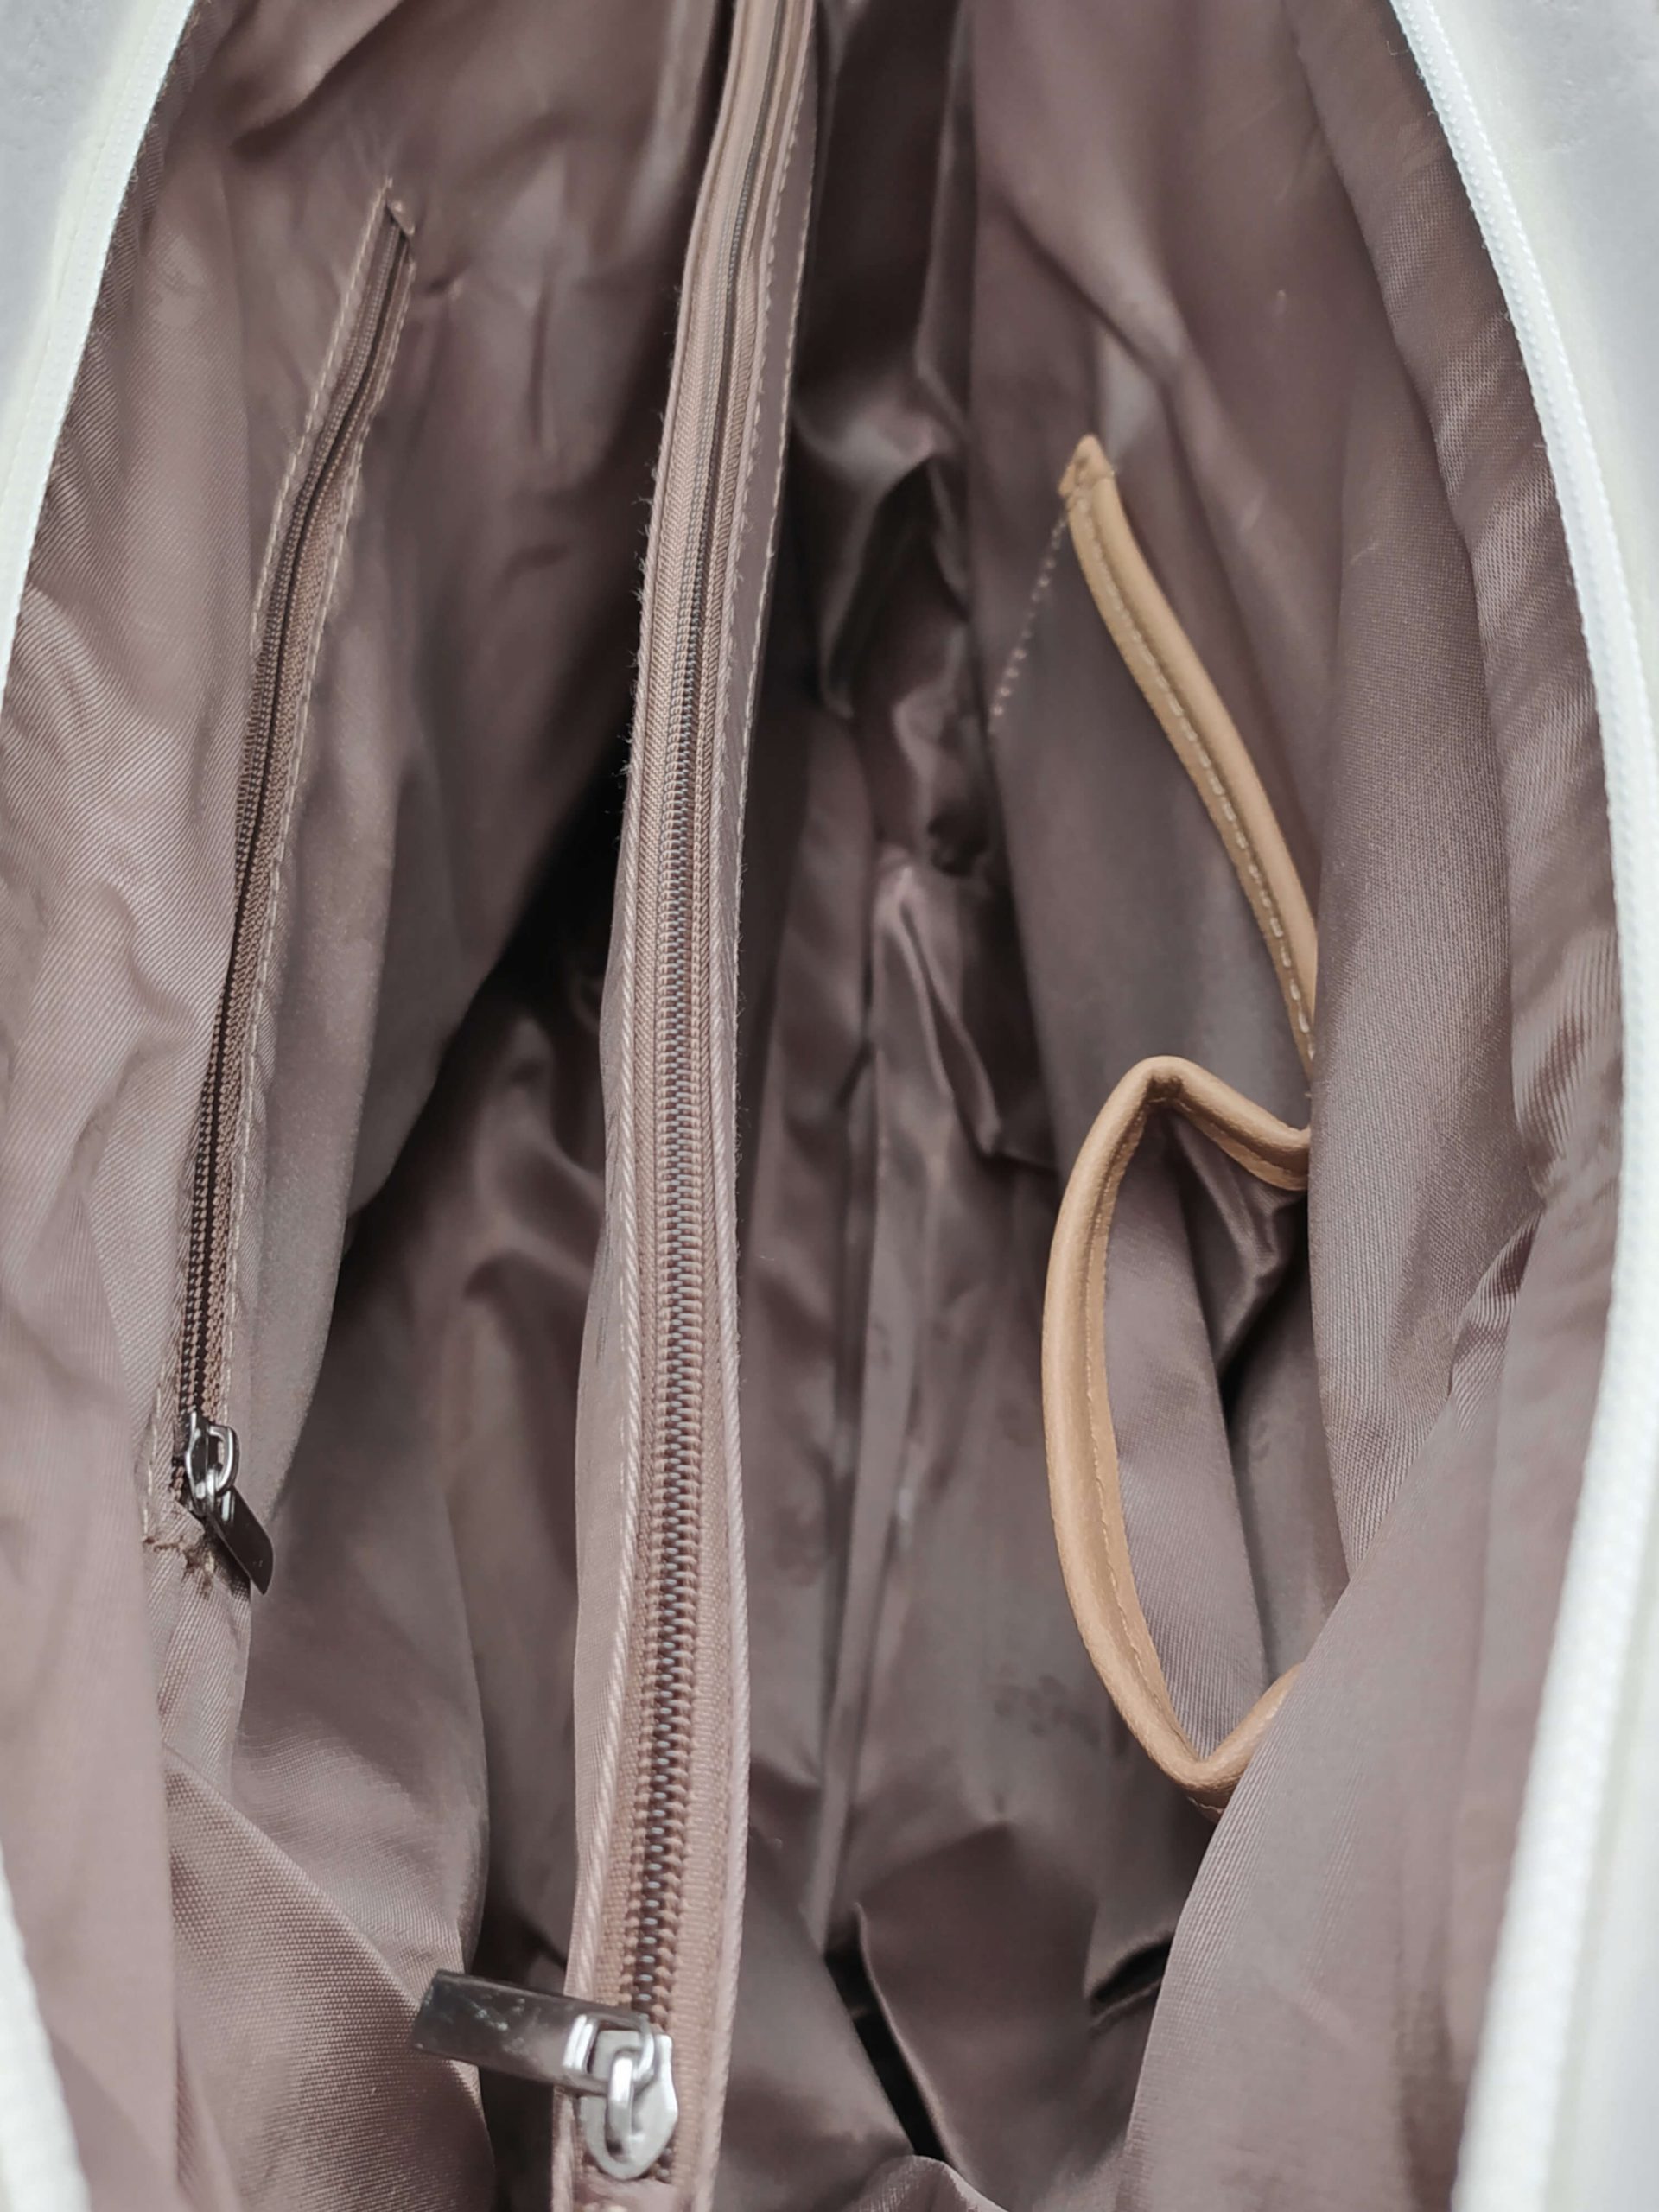 Bílá dámská kabelka přes rameno se vzory, Tapple, H17224, vnitřní uspořádání kabelky přes rameno